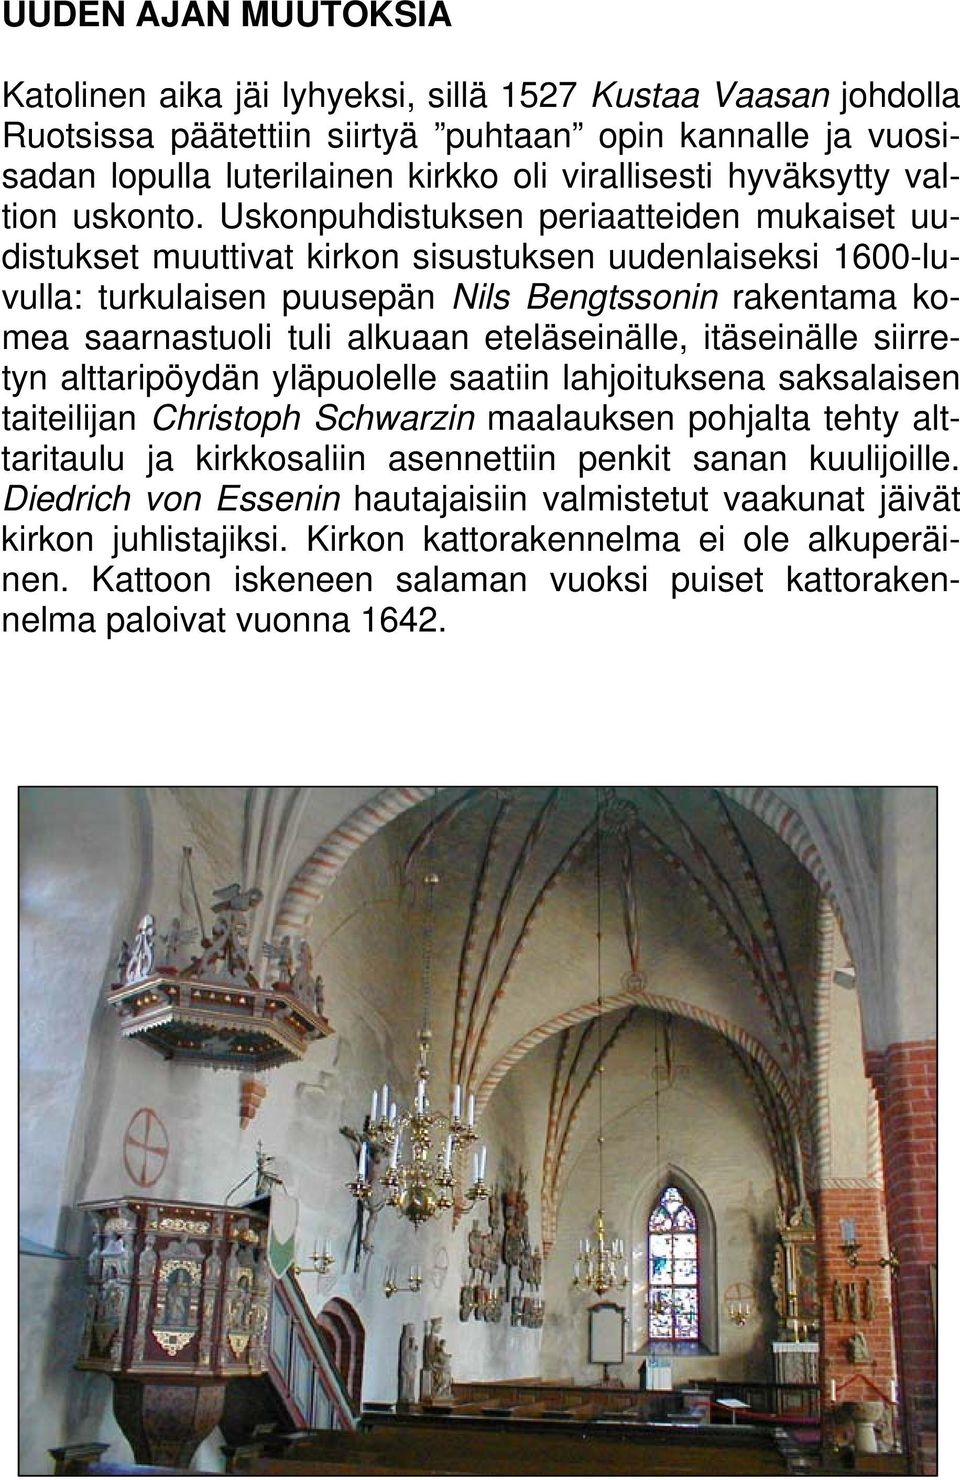 Uskonpuhdistuksen periaatteiden mukaiset uudistukset muuttivat kirkon sisustuksen uudenlaiseksi 1600-luvulla: turkulaisen puusepän Nils Bengtssonin rakentama komea saarnastuoli tuli alkuaan